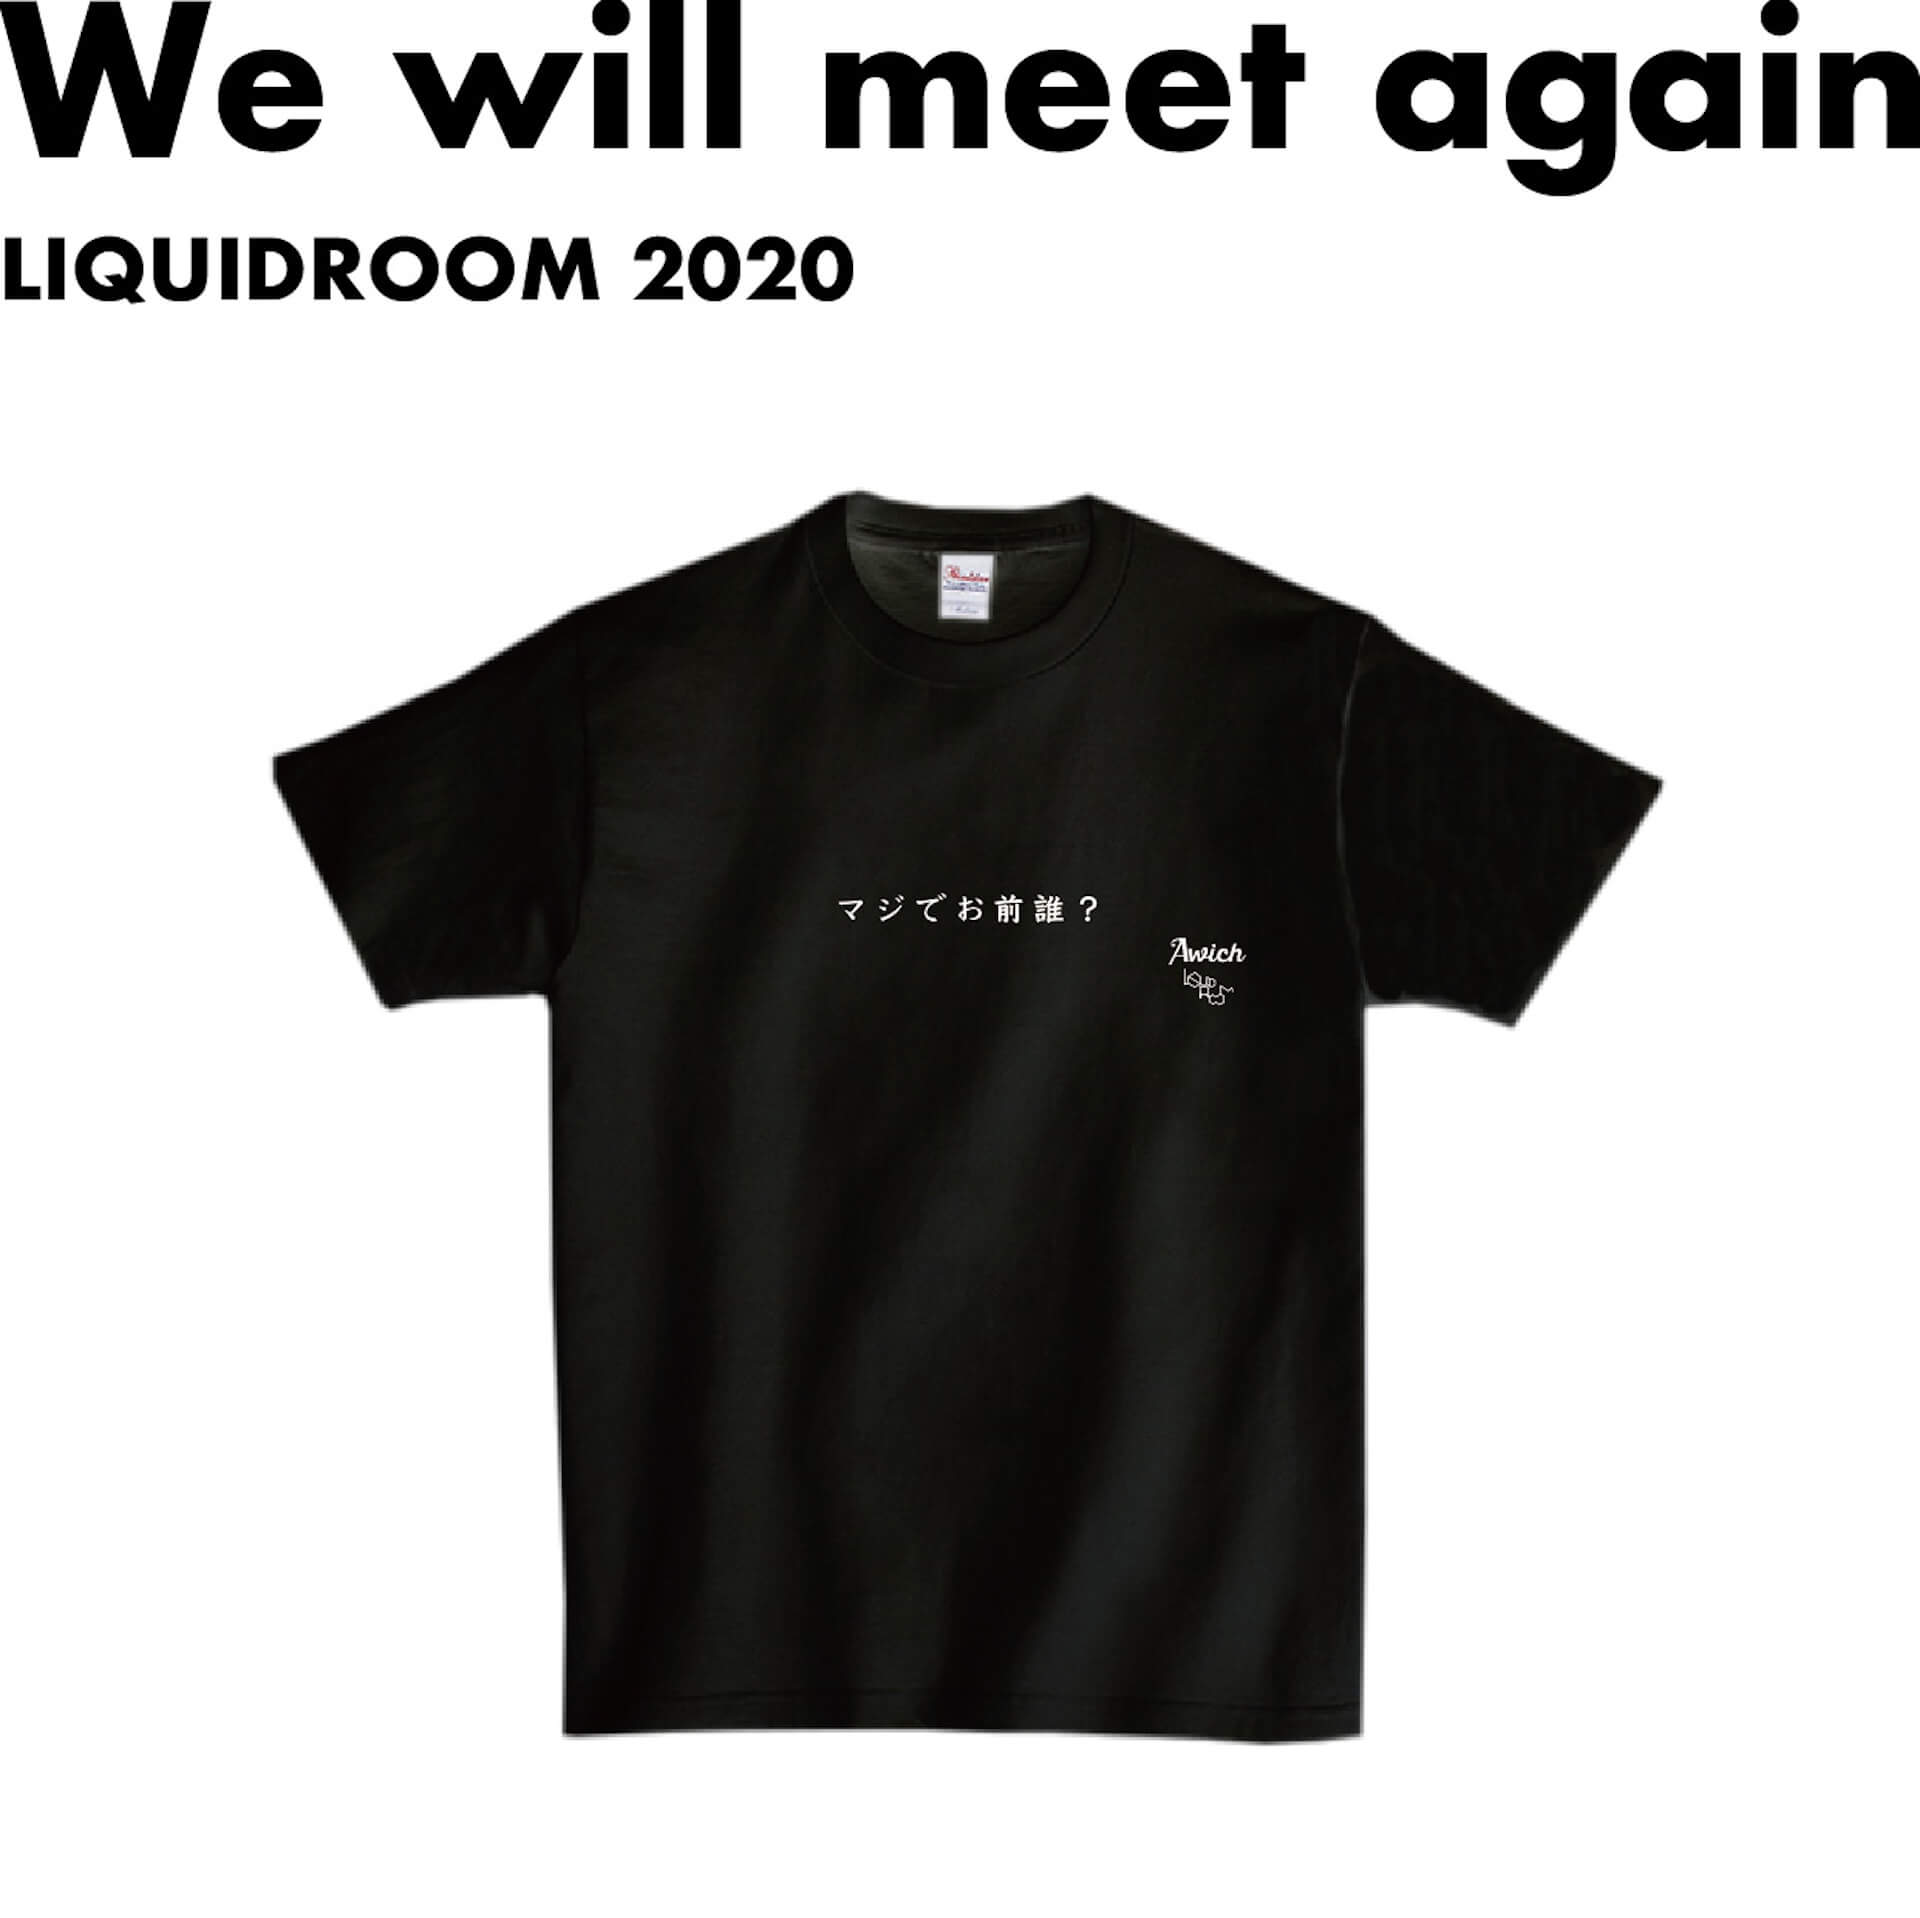 Awich、世に問う「お前誰T」　LIQUIDROOMとアーティストたちによるメッセージTシャツ・プロジェクト〈We will meet again〉より発表 music200529-liquidroom-awich-1